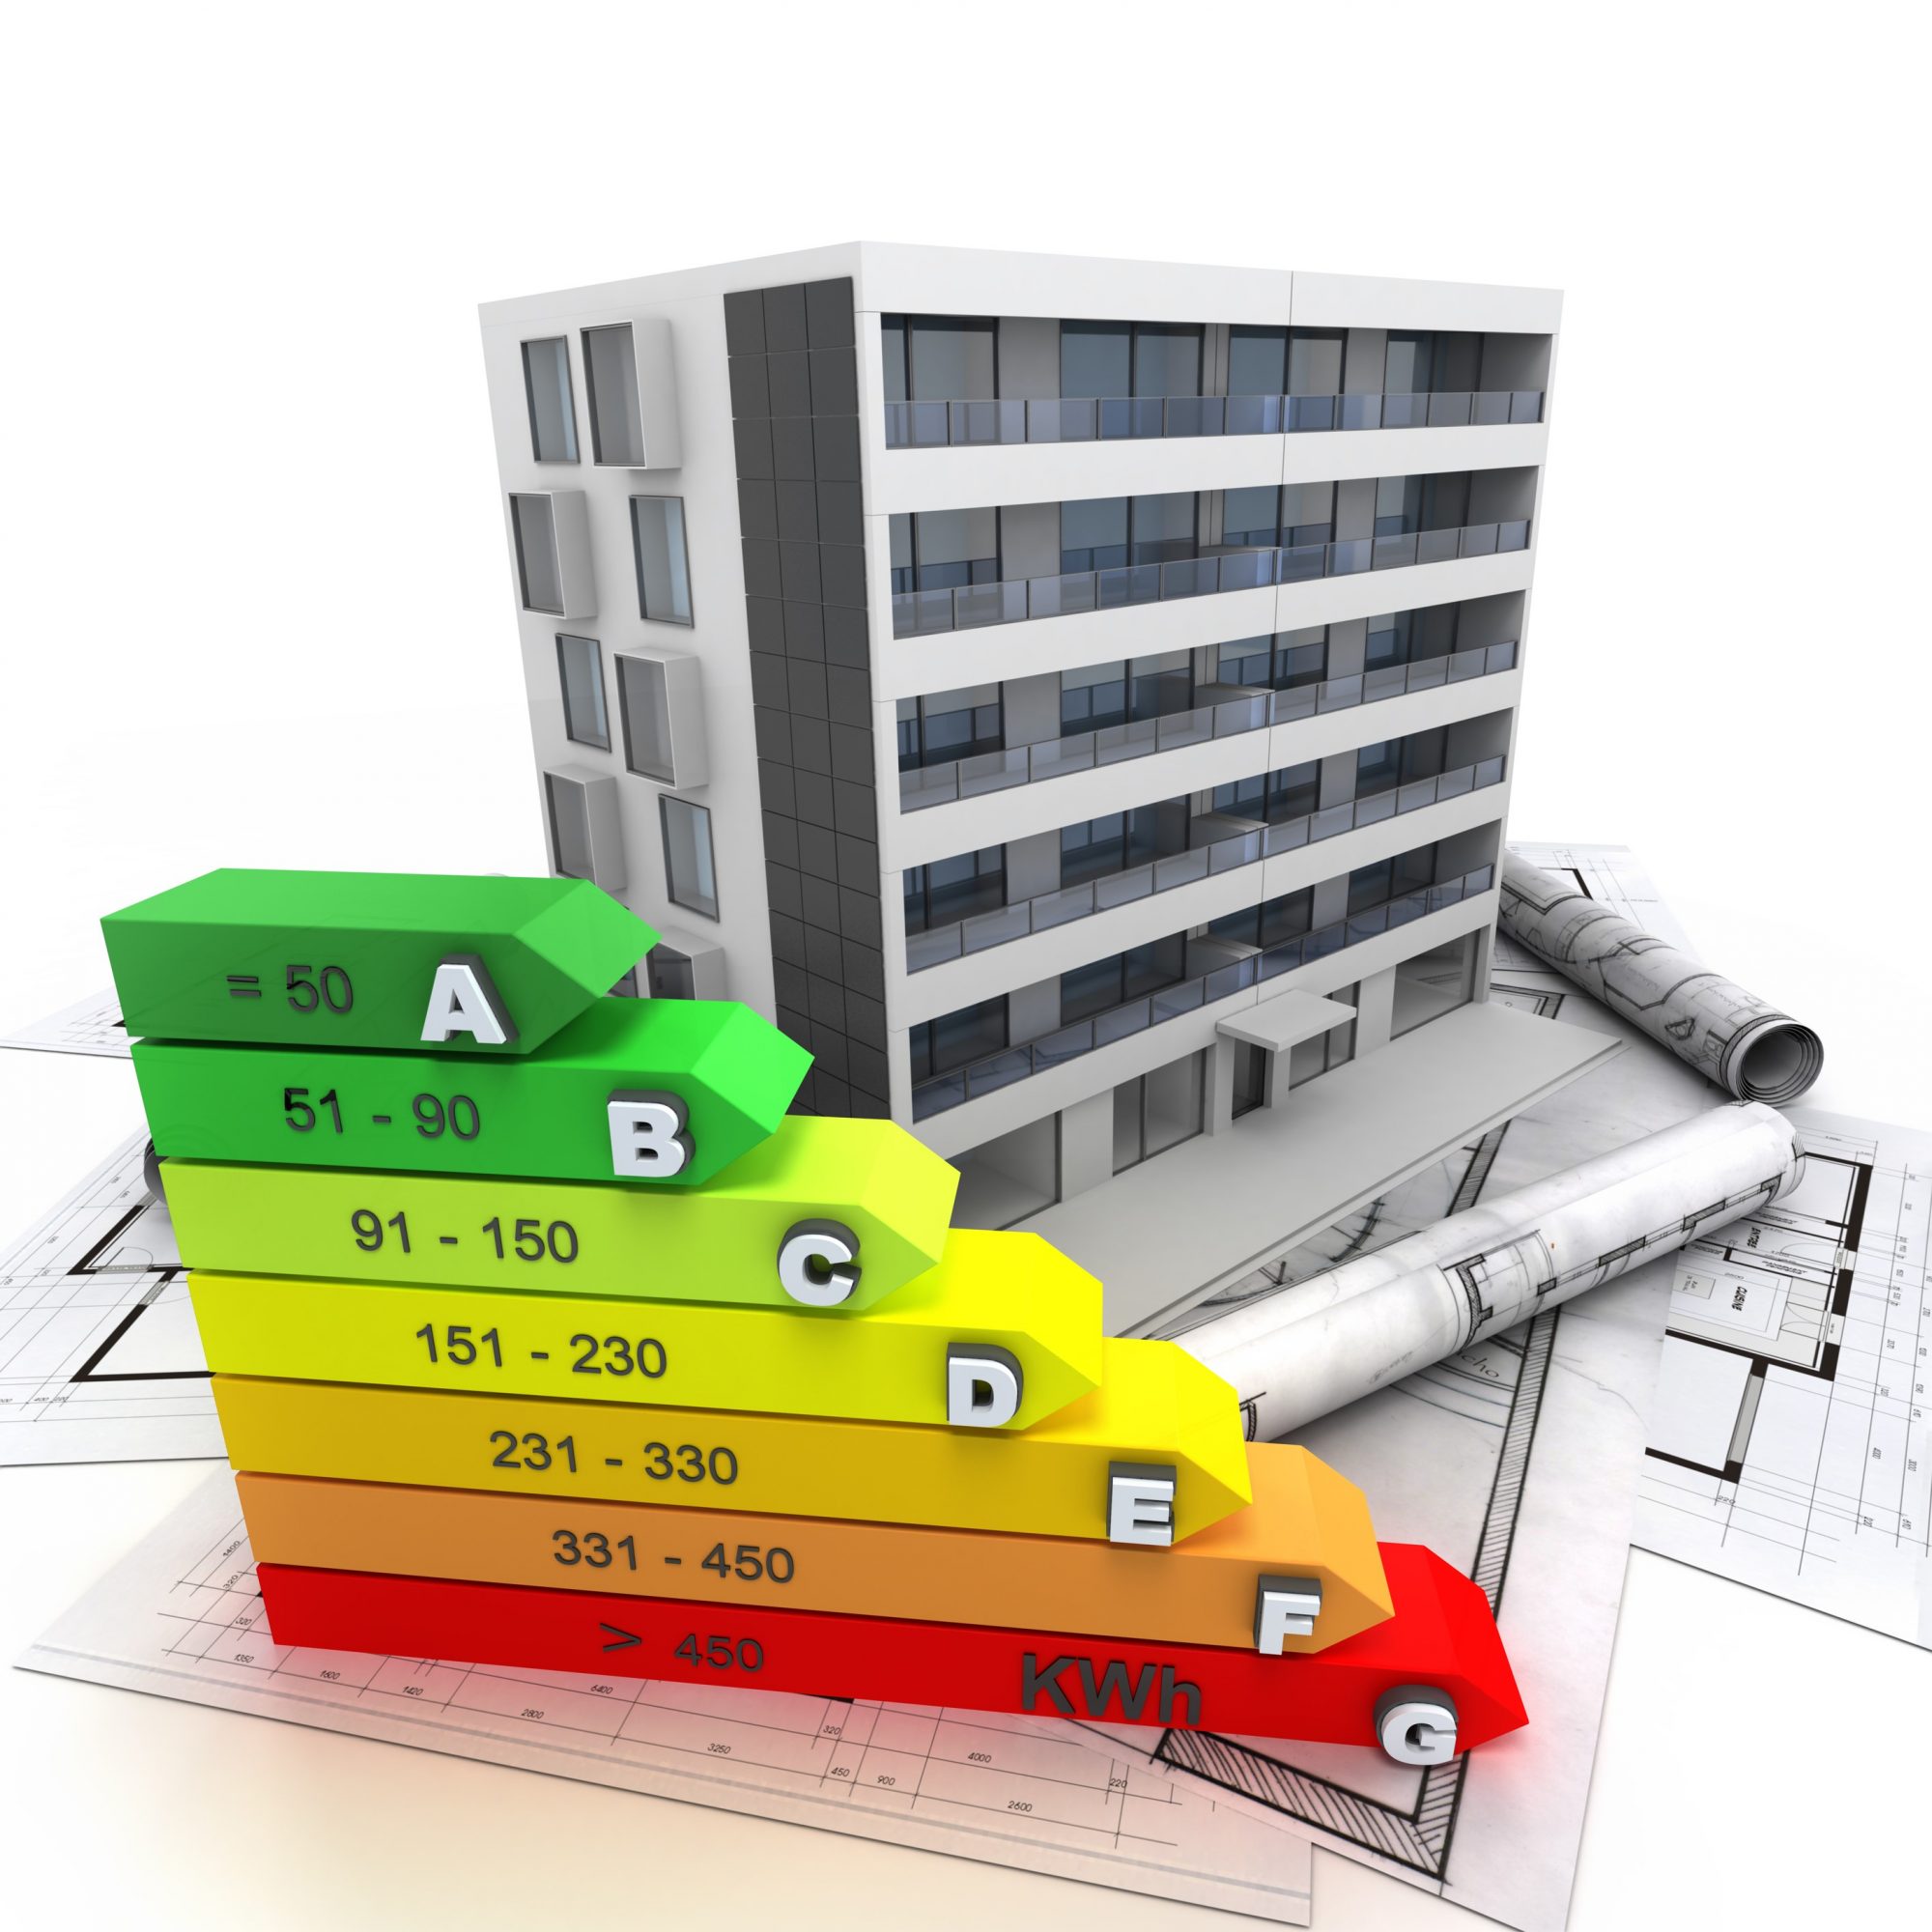 energy efficiency building